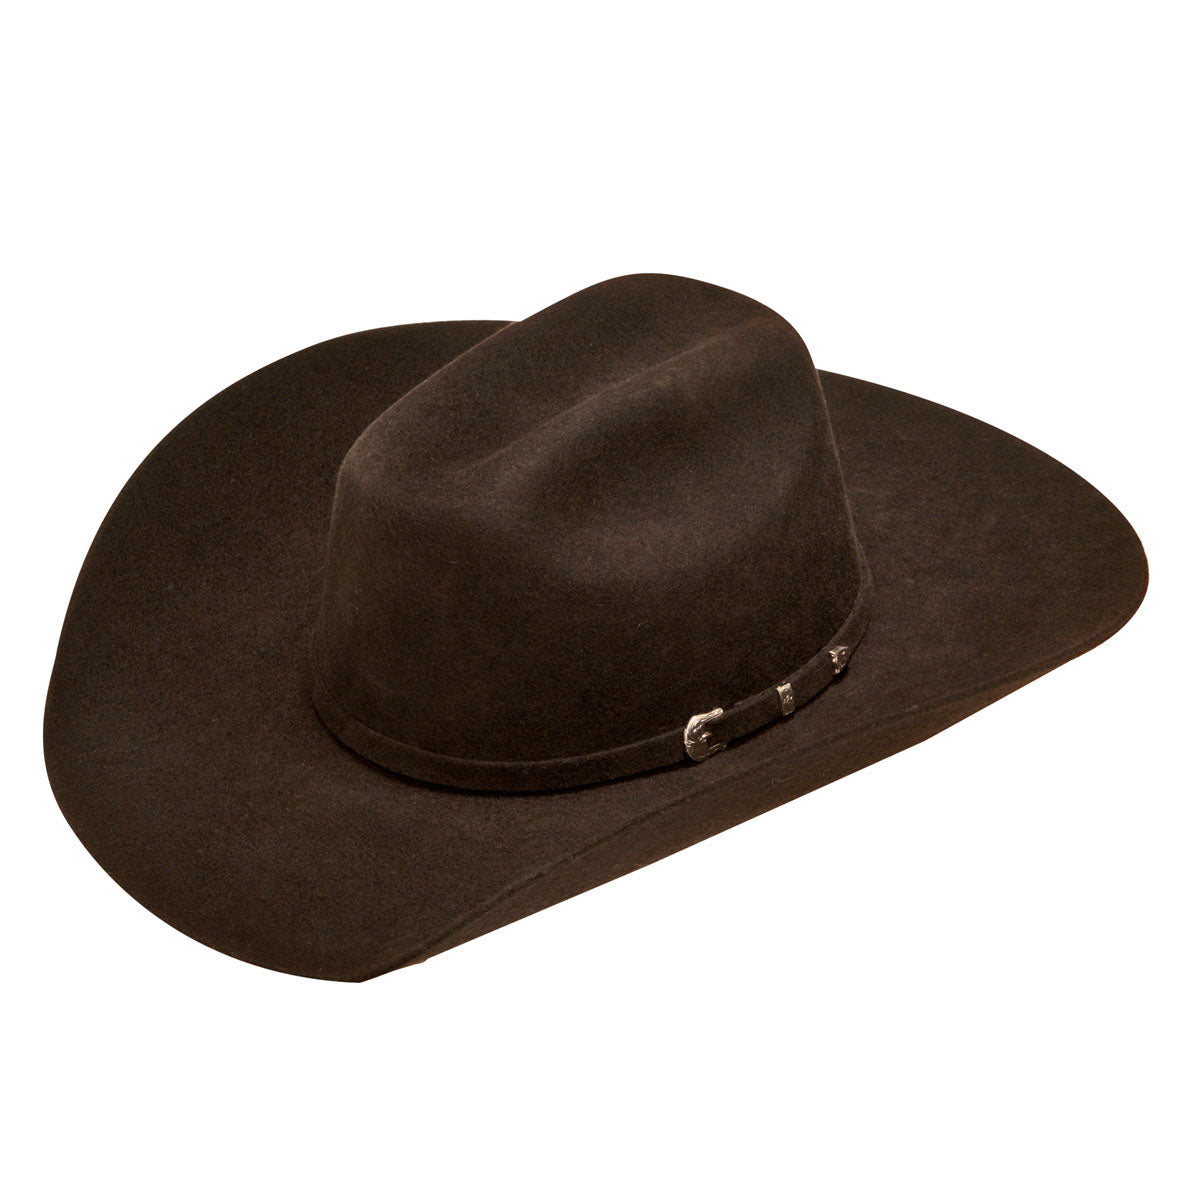 Ariat Youth Wool Felt Cowboy Hat